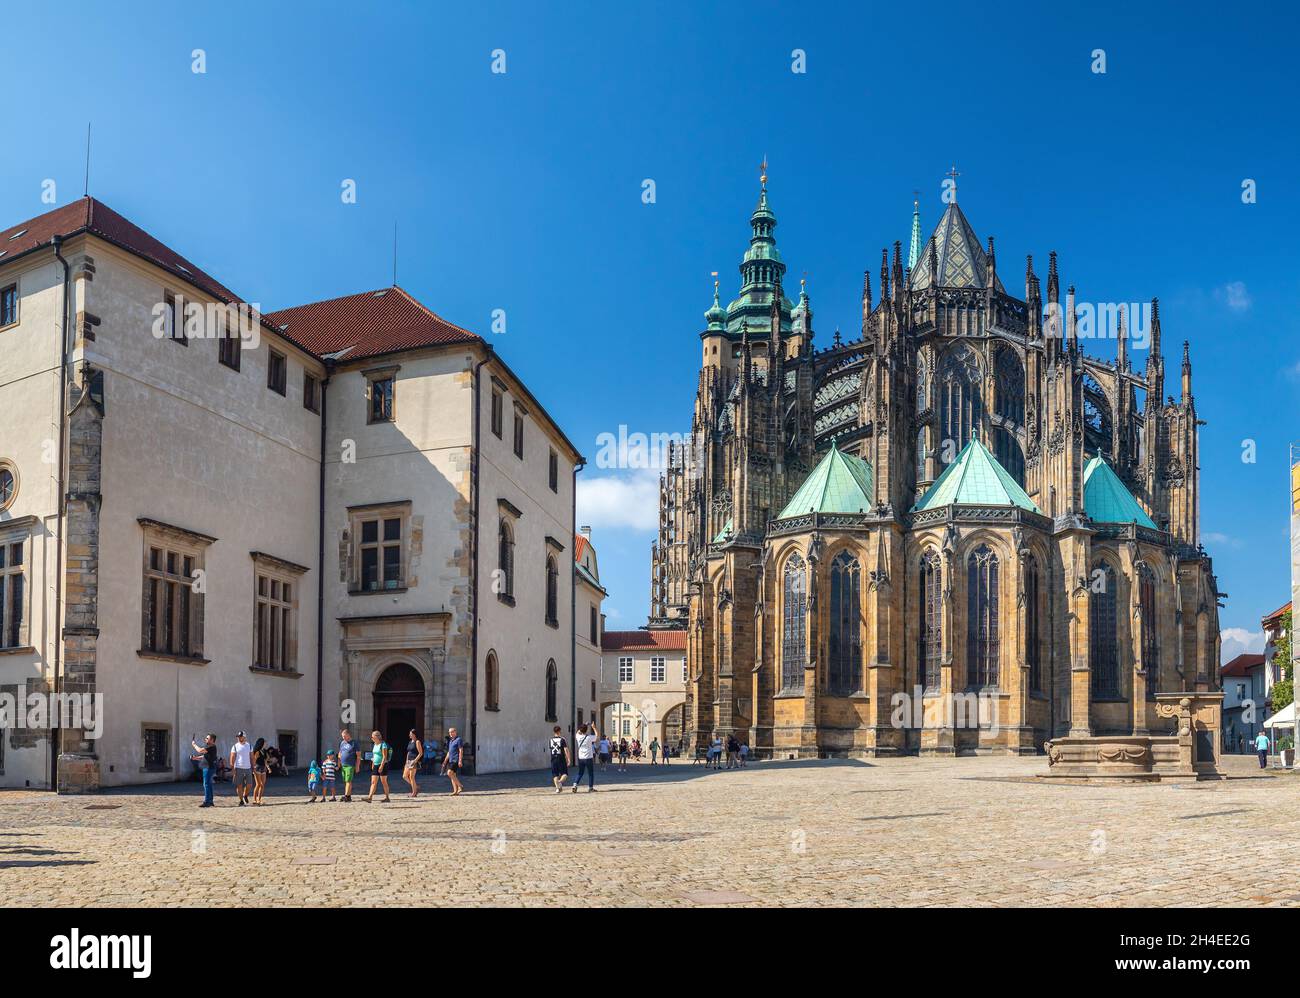 Cattedrale di San Vito nel cortile del castello, vista sul retro della cattedrale, Praga, repubblica Ceca Foto Stock